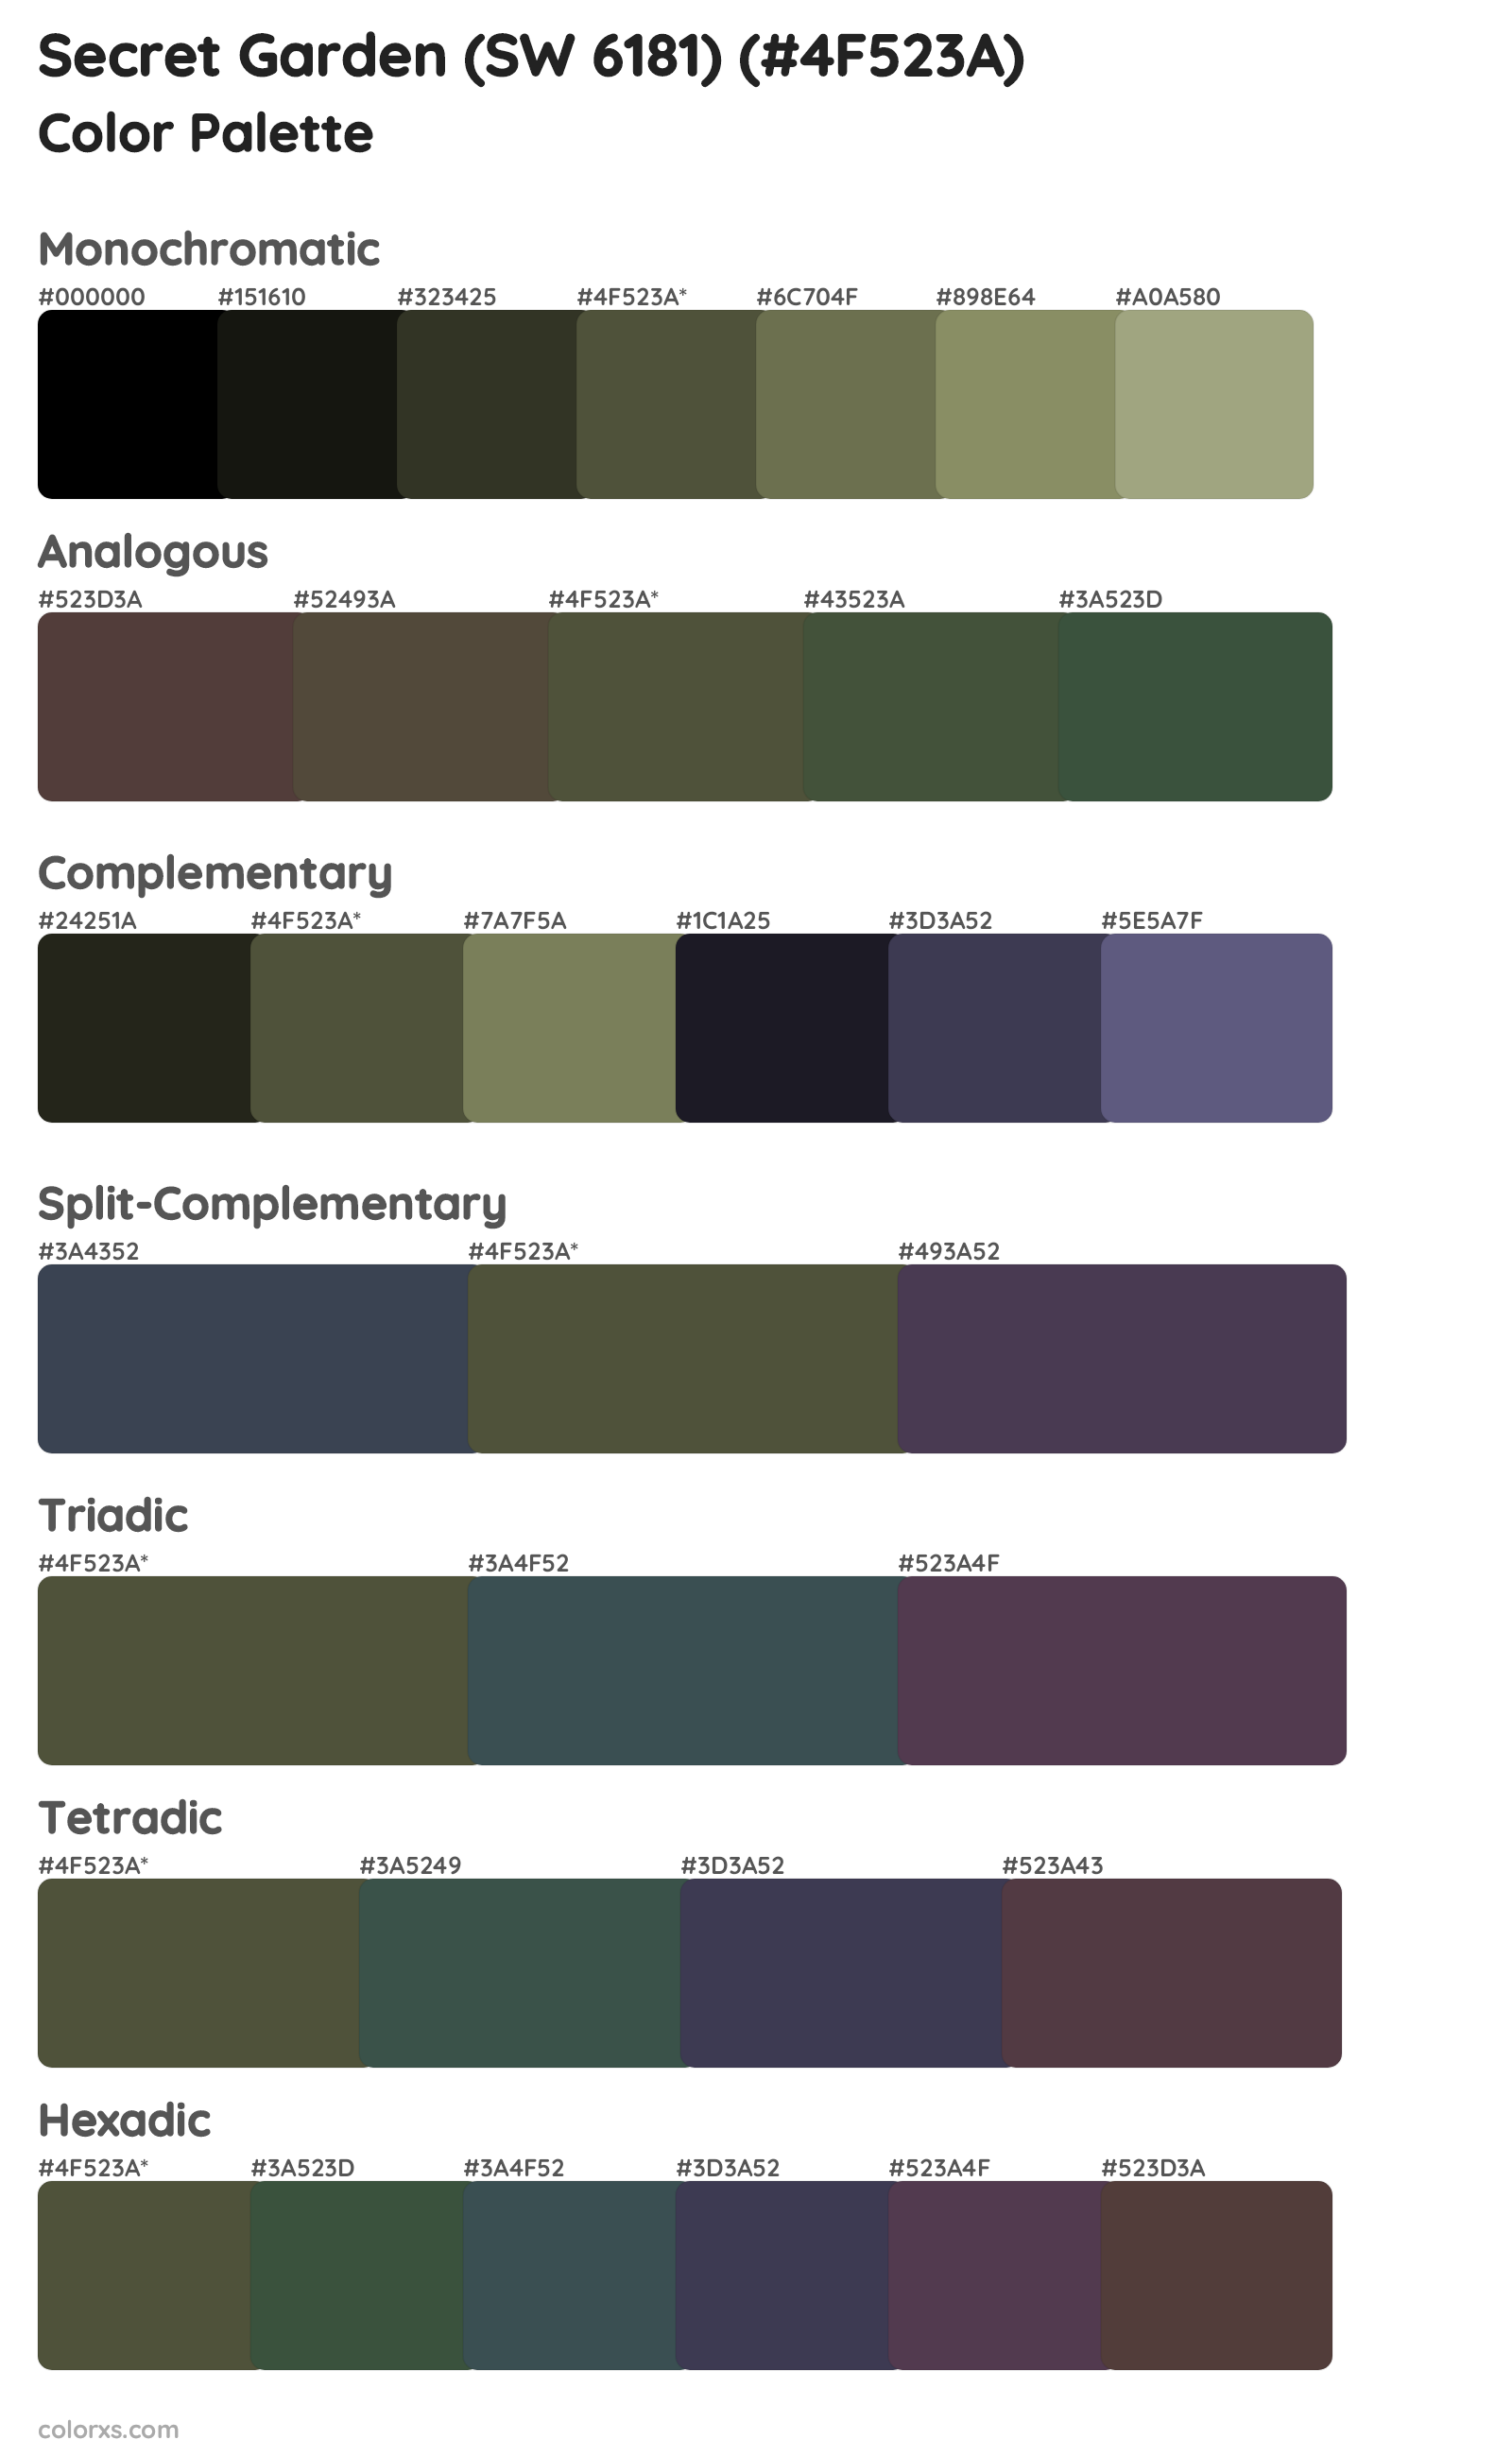 Secret Garden (SW 6181) Color Scheme Palettes